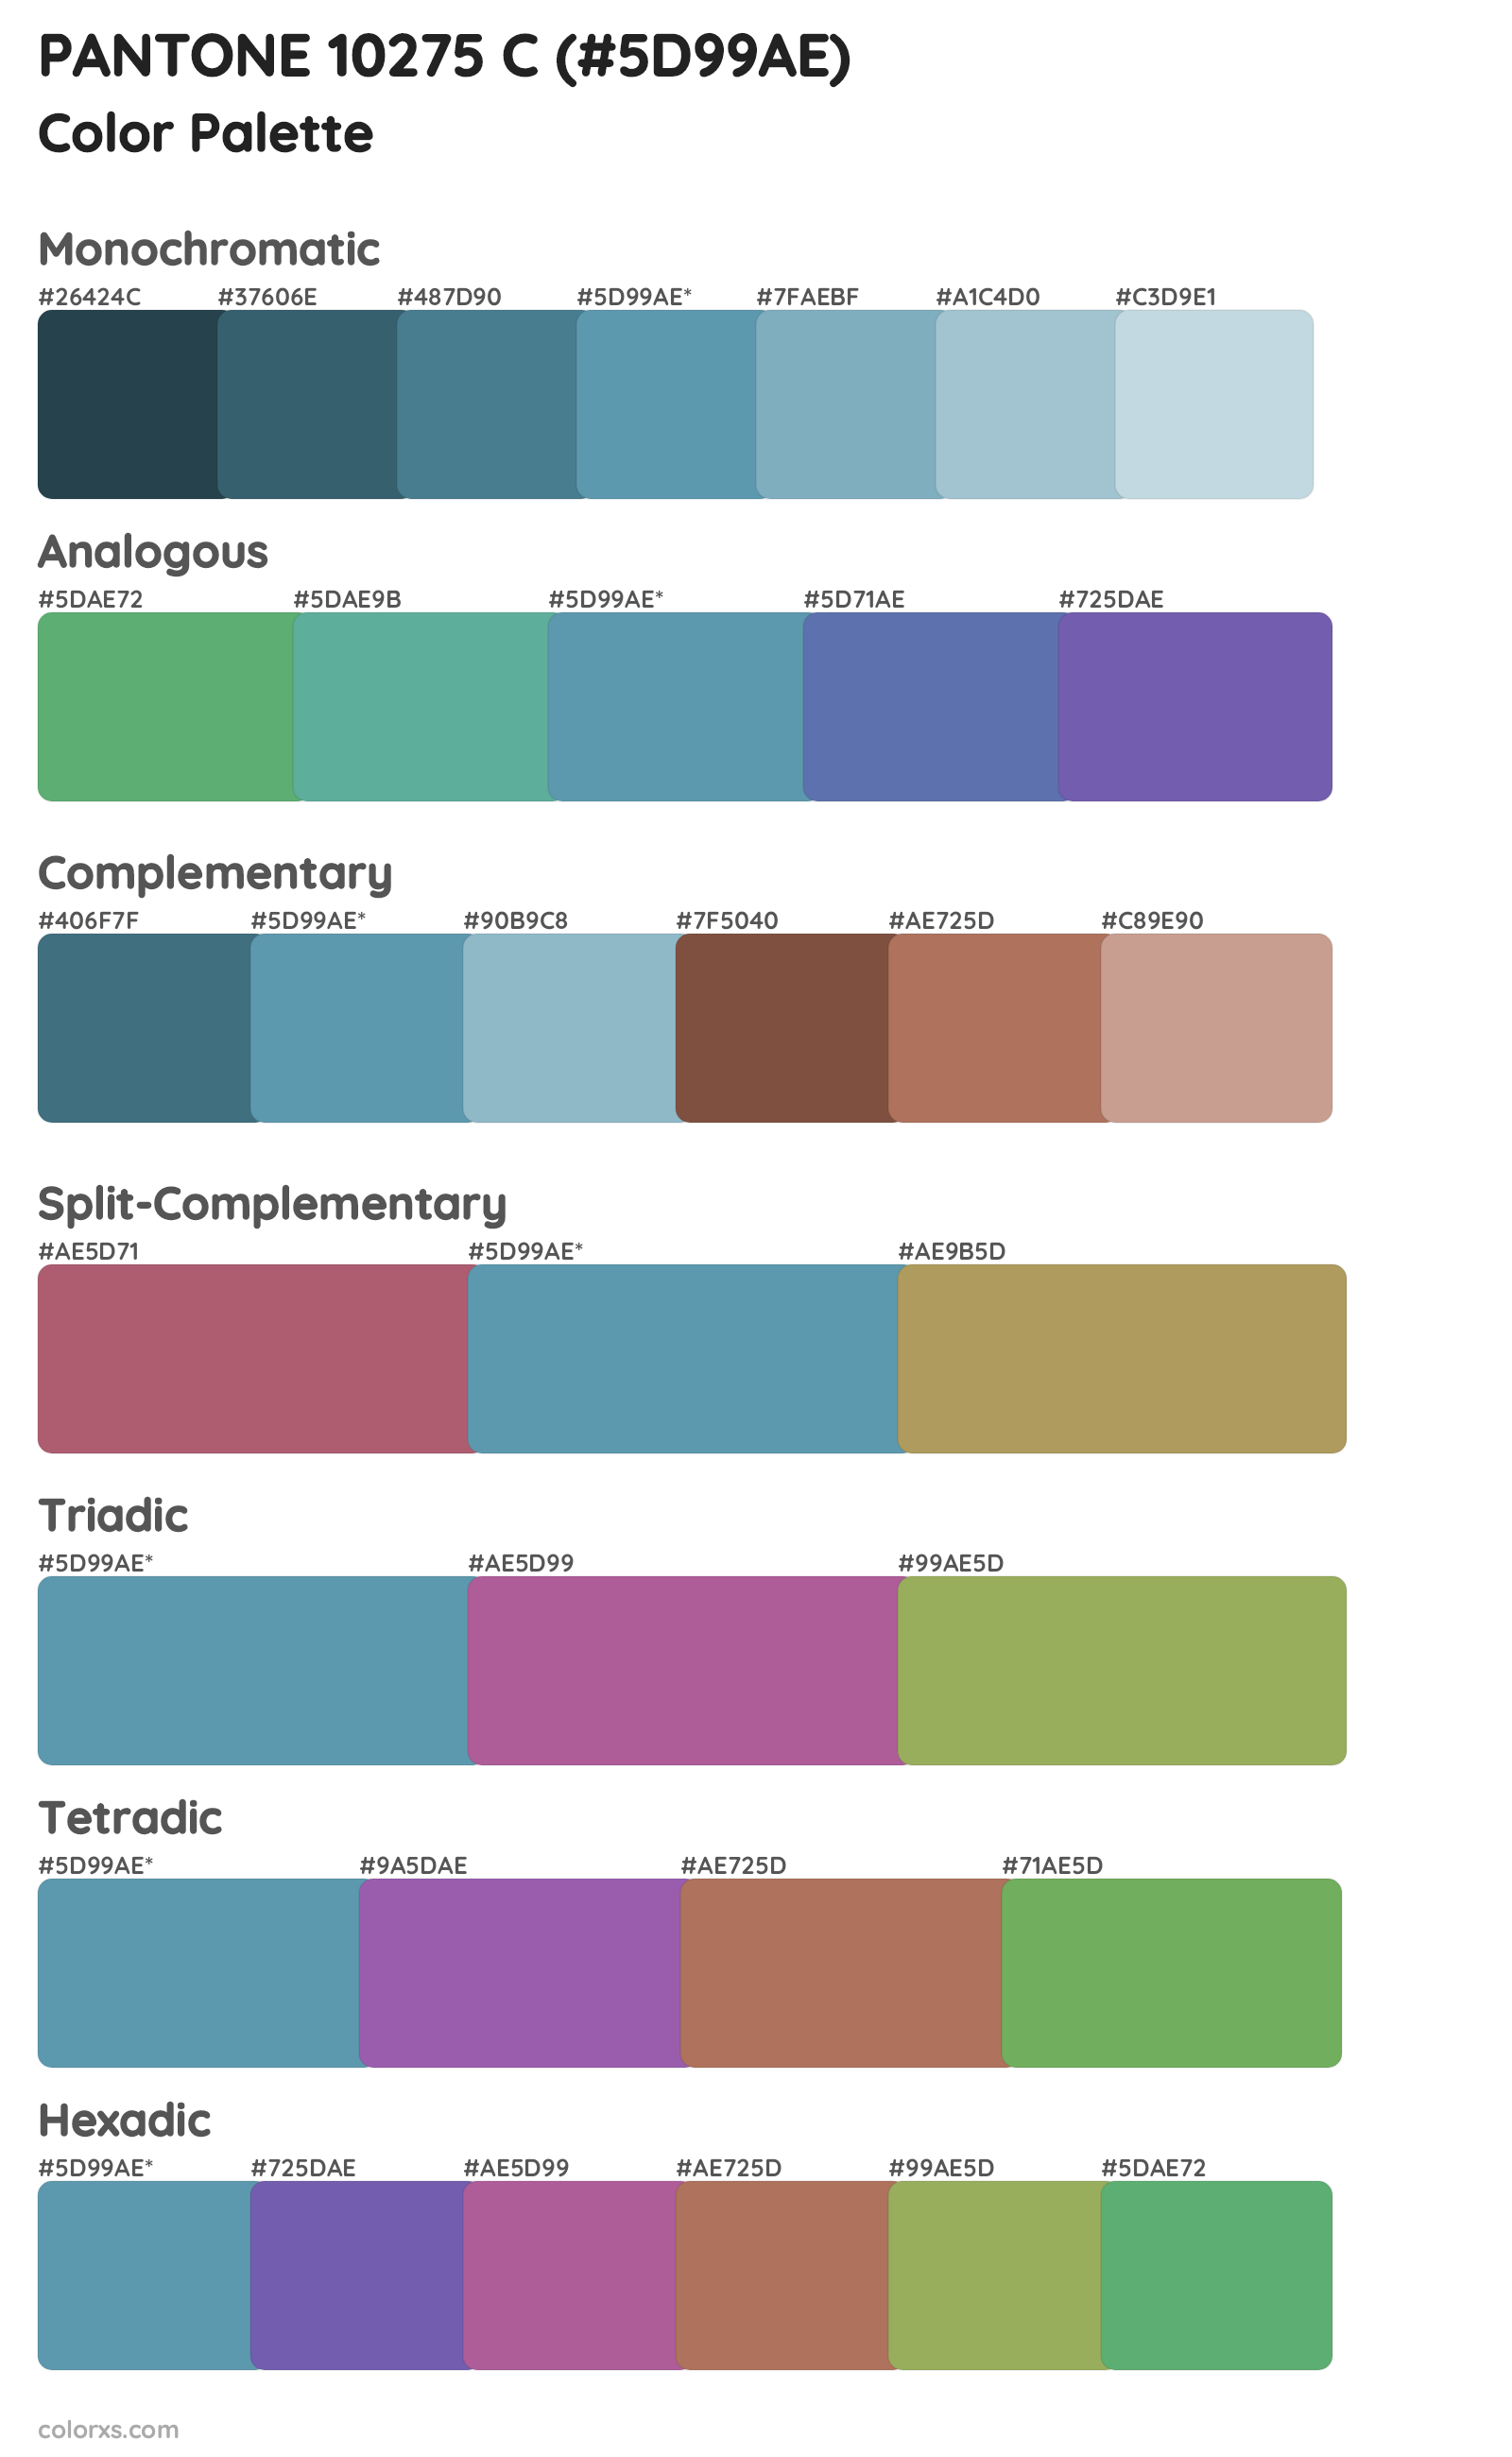 PANTONE 10275 C Color Scheme Palettes